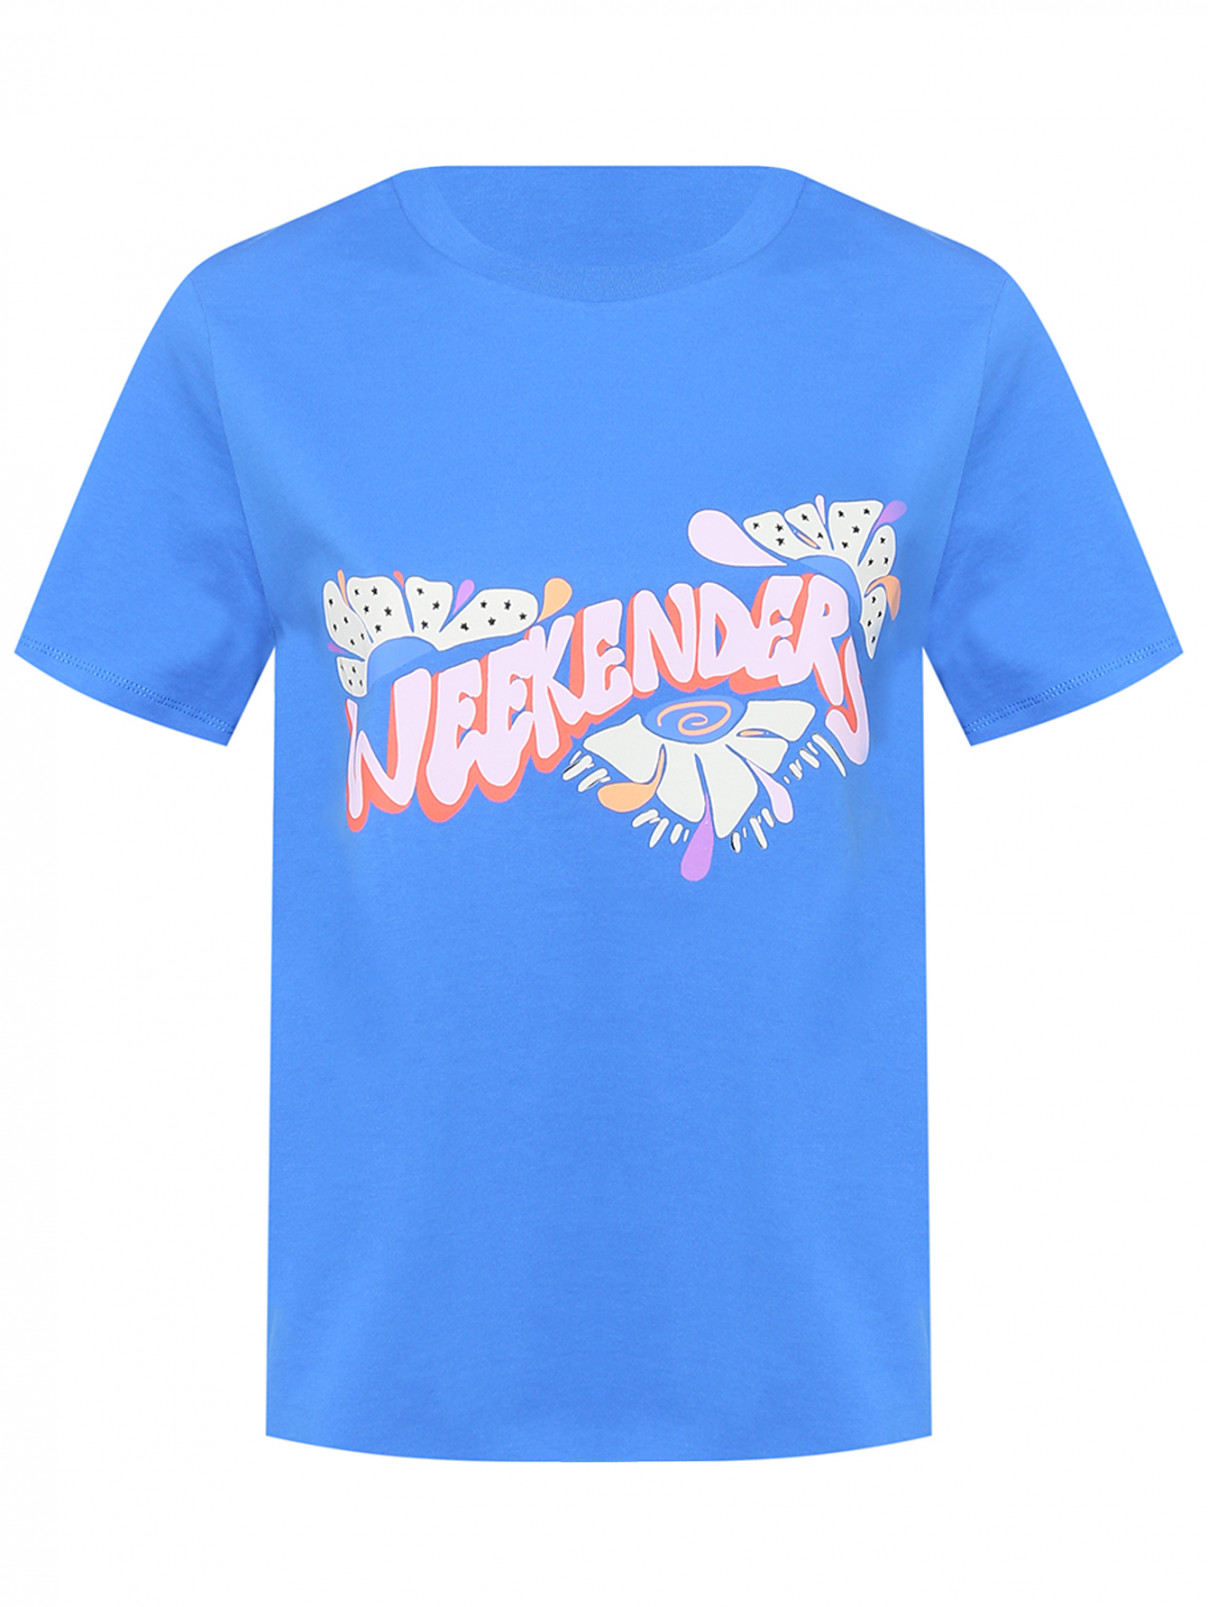 Трикотажная футболка с принтом Weekend Max Mara  –  Общий вид  – Цвет:  Синий